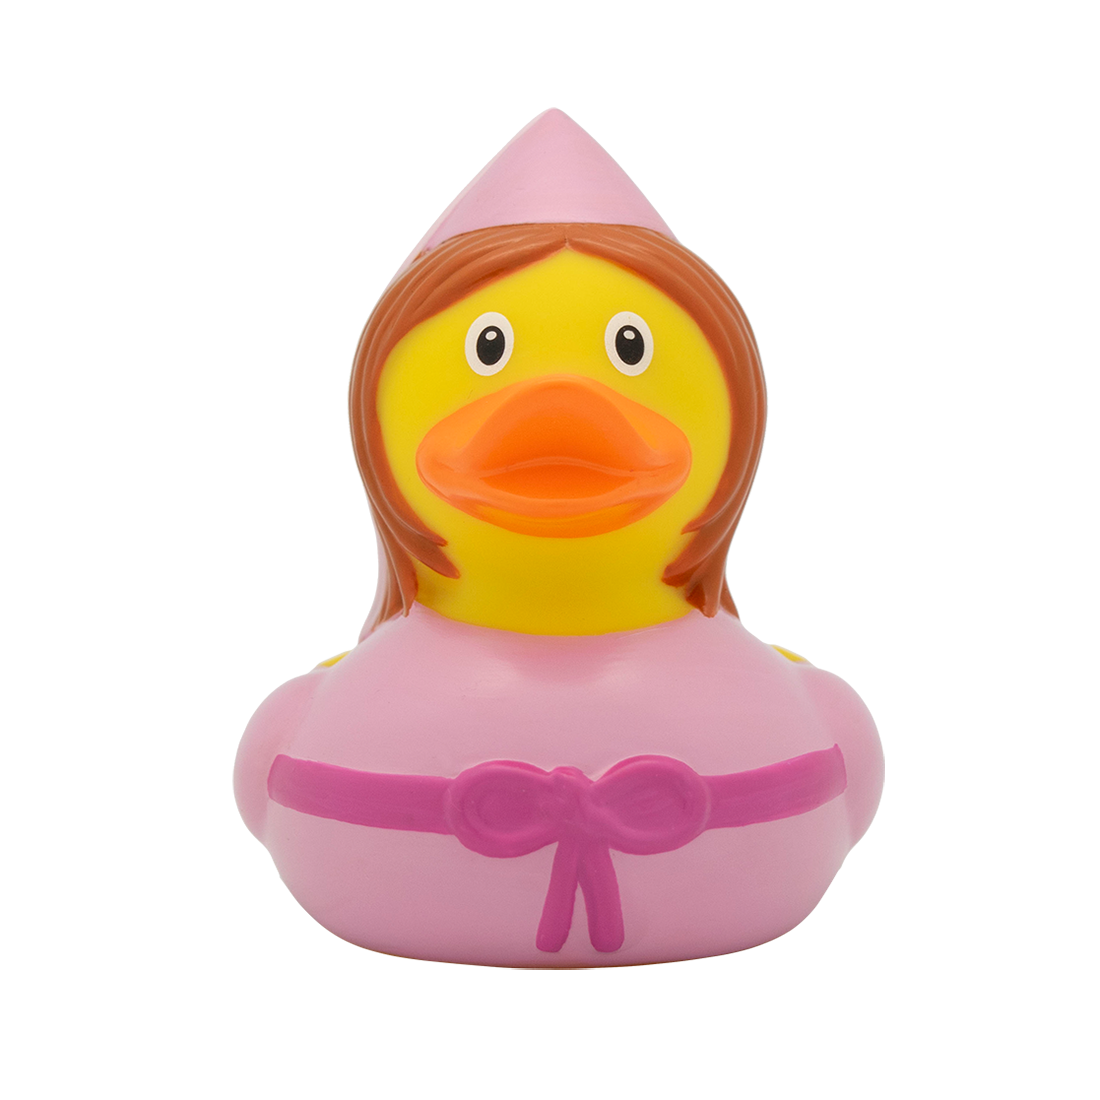 Fairy fairytale duck